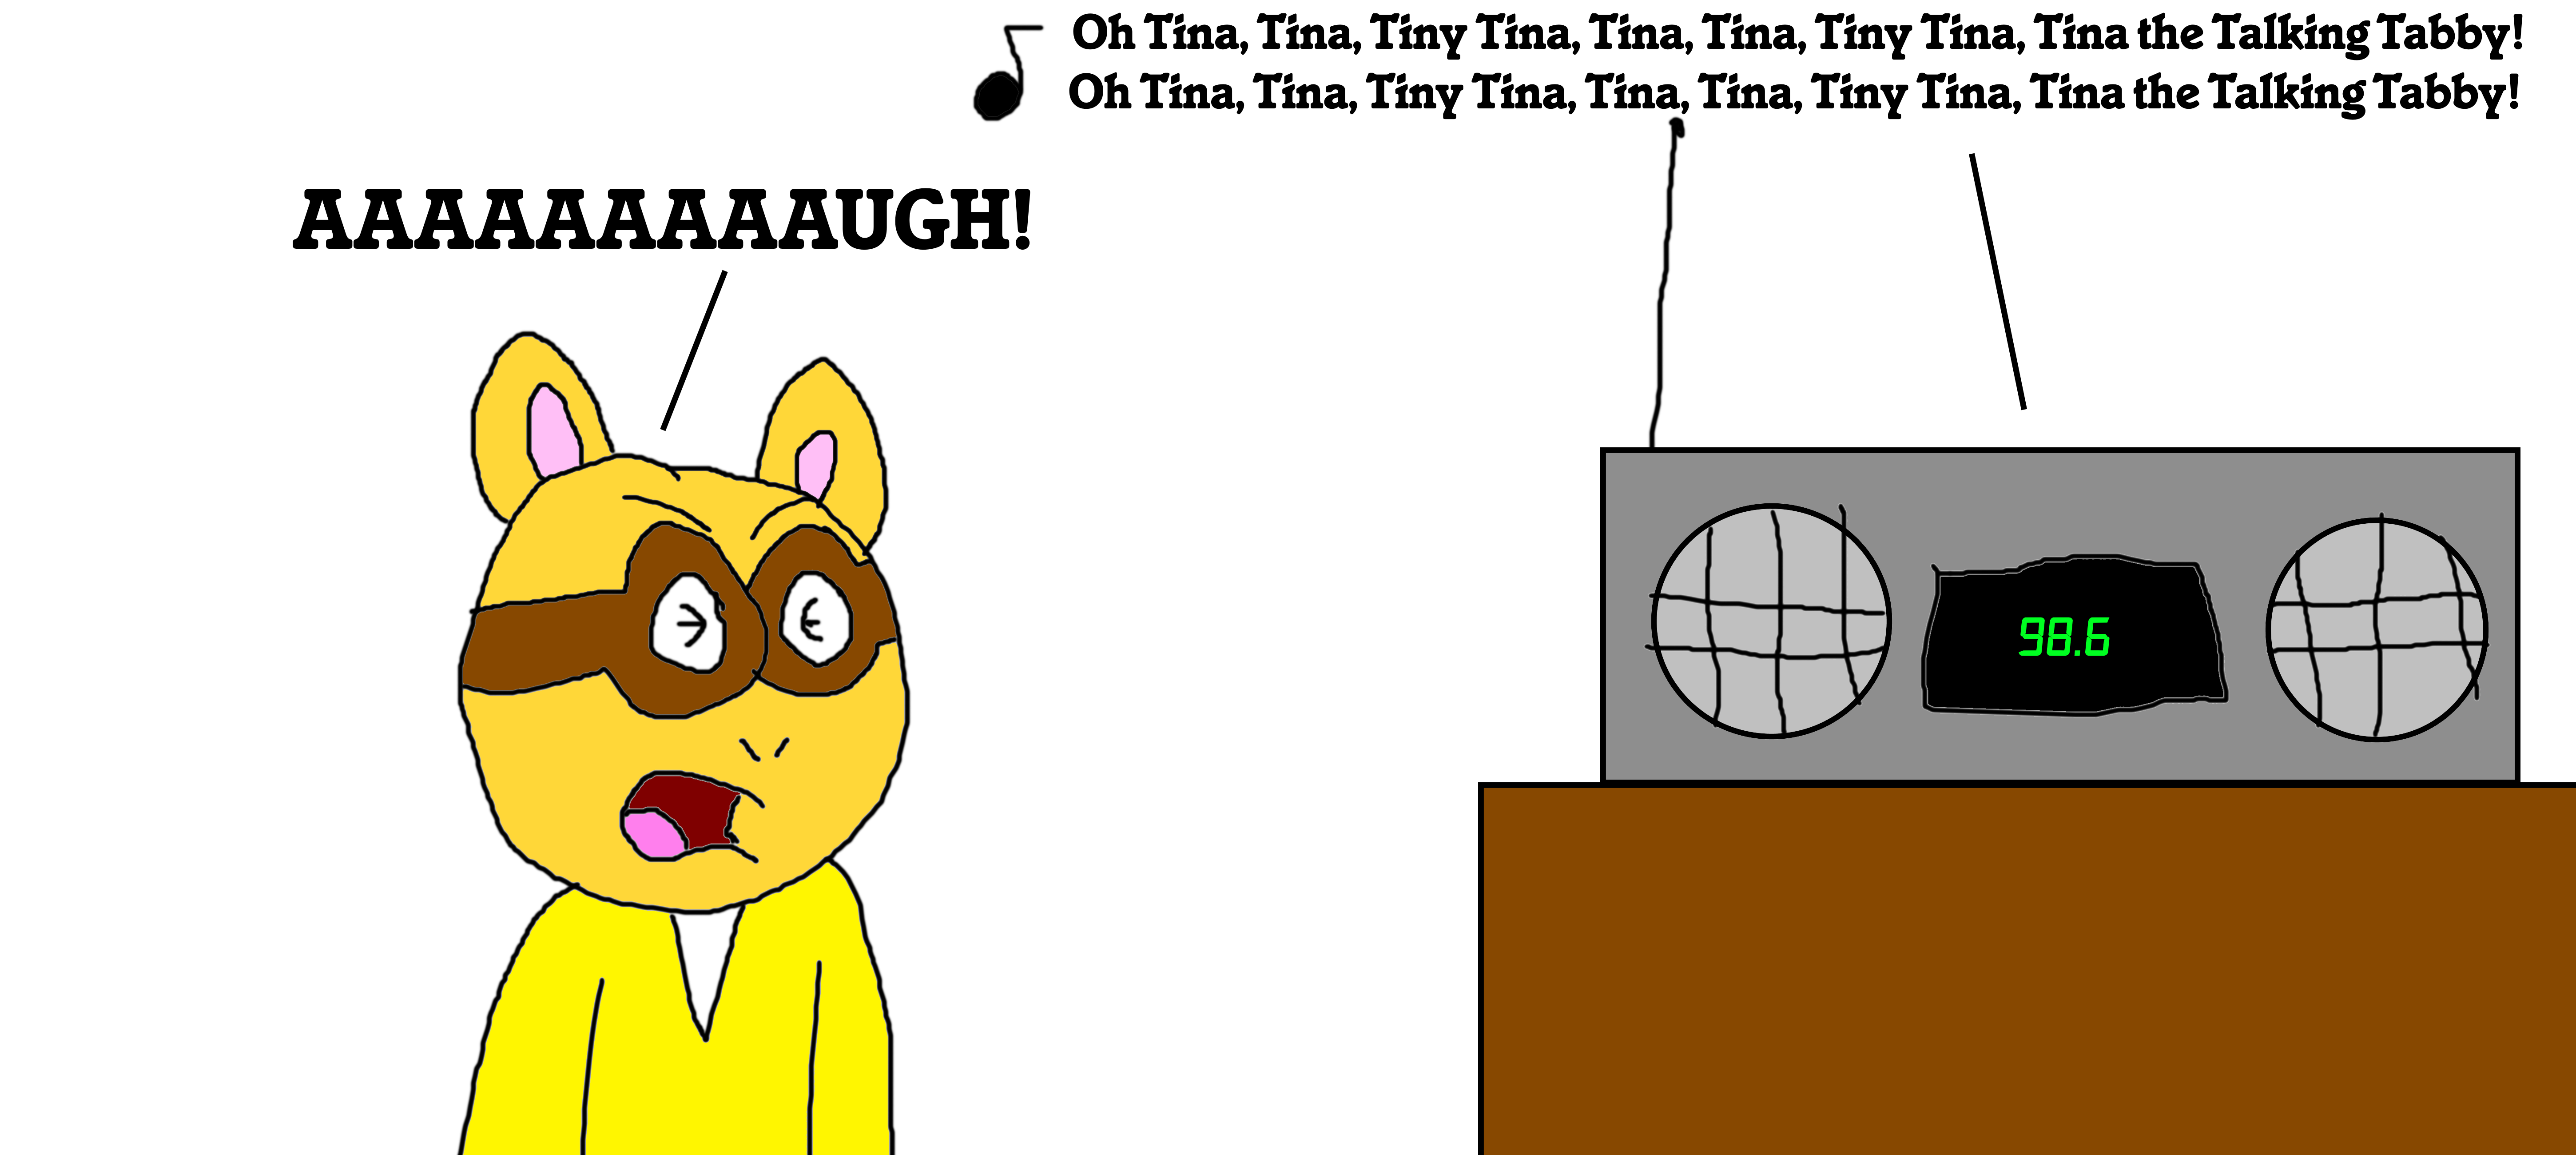 Arthur Sick of the Tiny Tina Song! by MJEGameandComicFan89 on DeviantArt